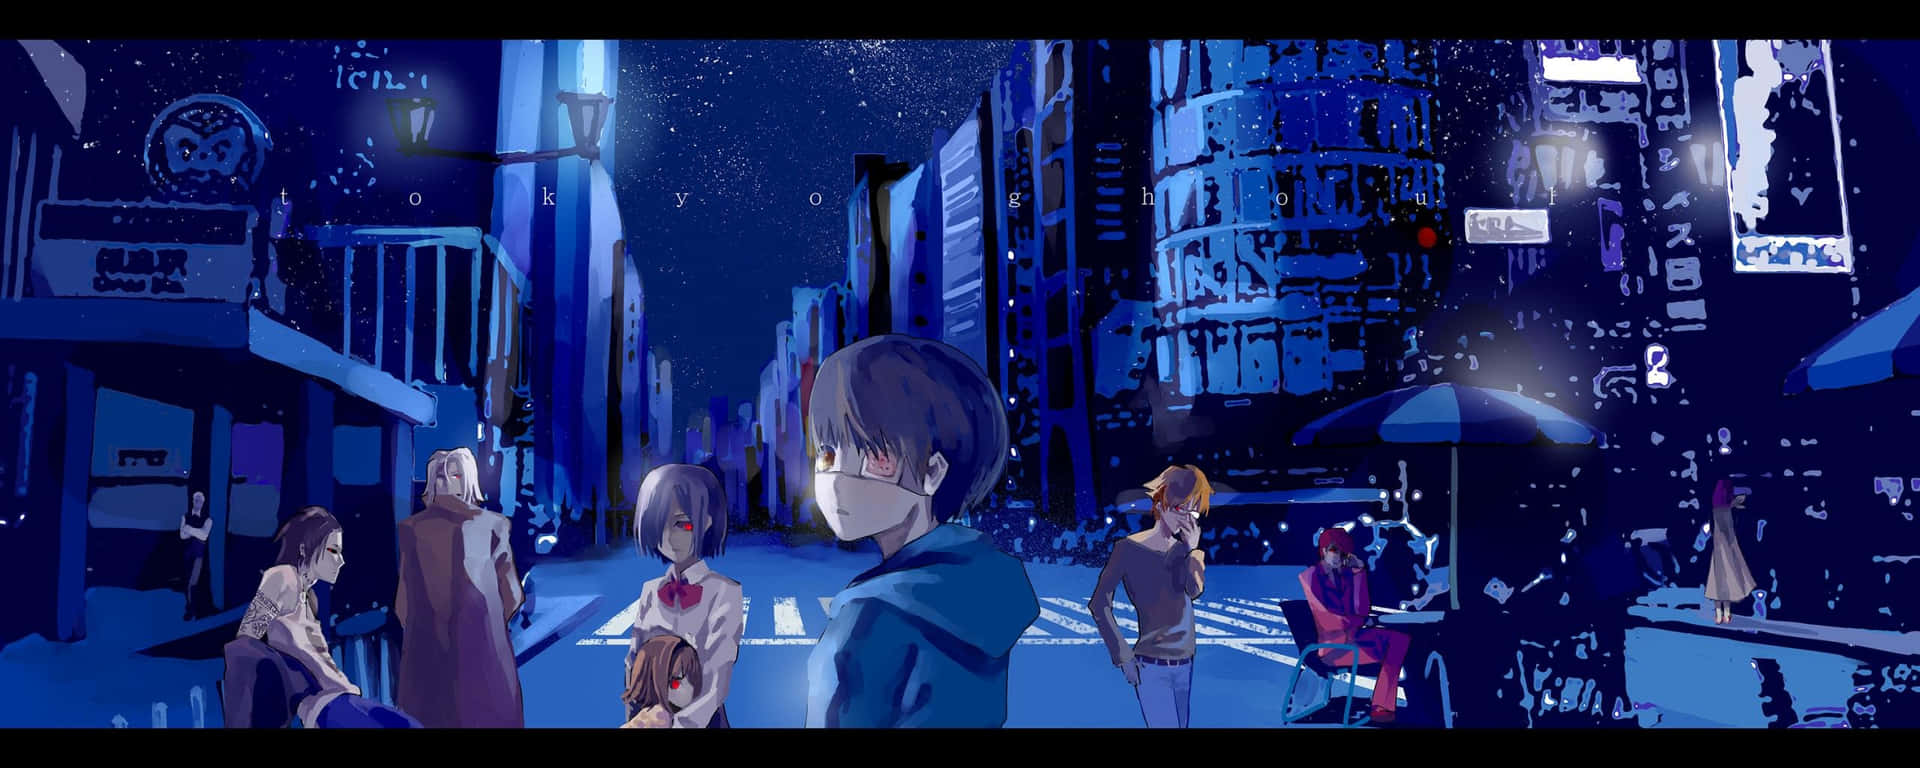 Fondode Pantalla De Anime Tokyo Ghoul:re Con Miembros De Anteiku Para Monitores Duales. Fondo de pantalla